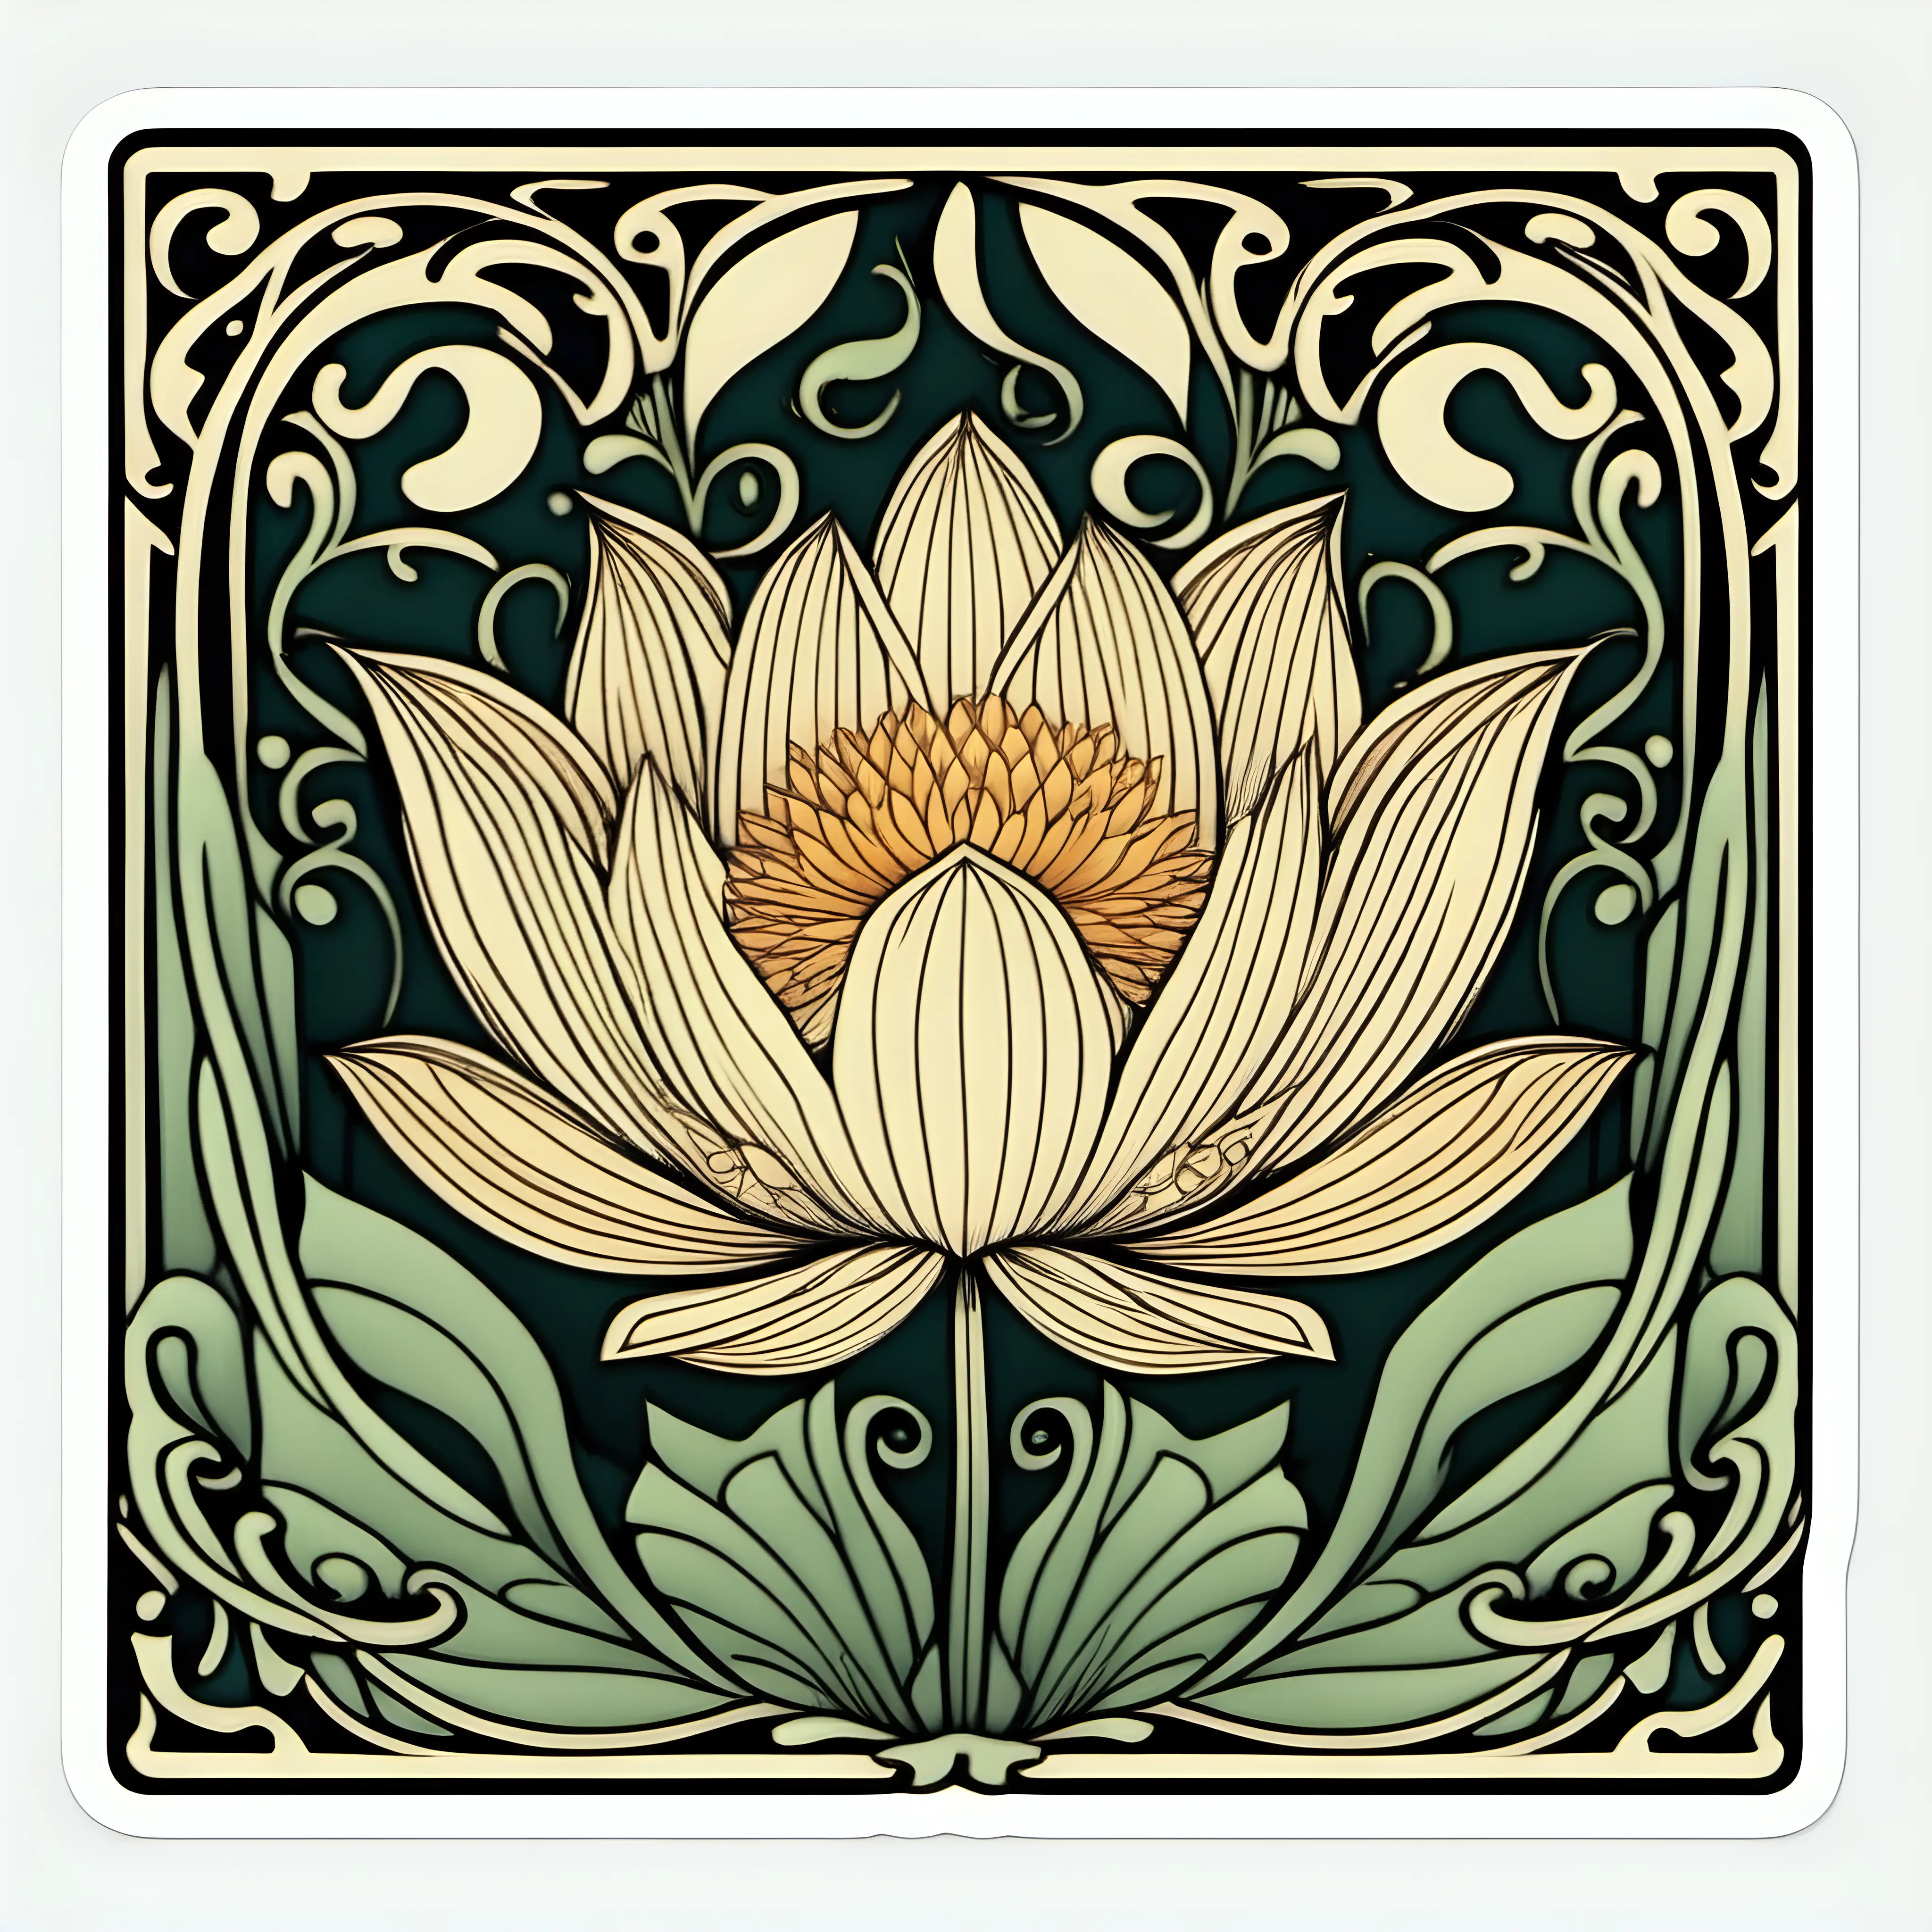 1960 art, image of a lotus flower Art Nouveau floral border, simplified, sticker